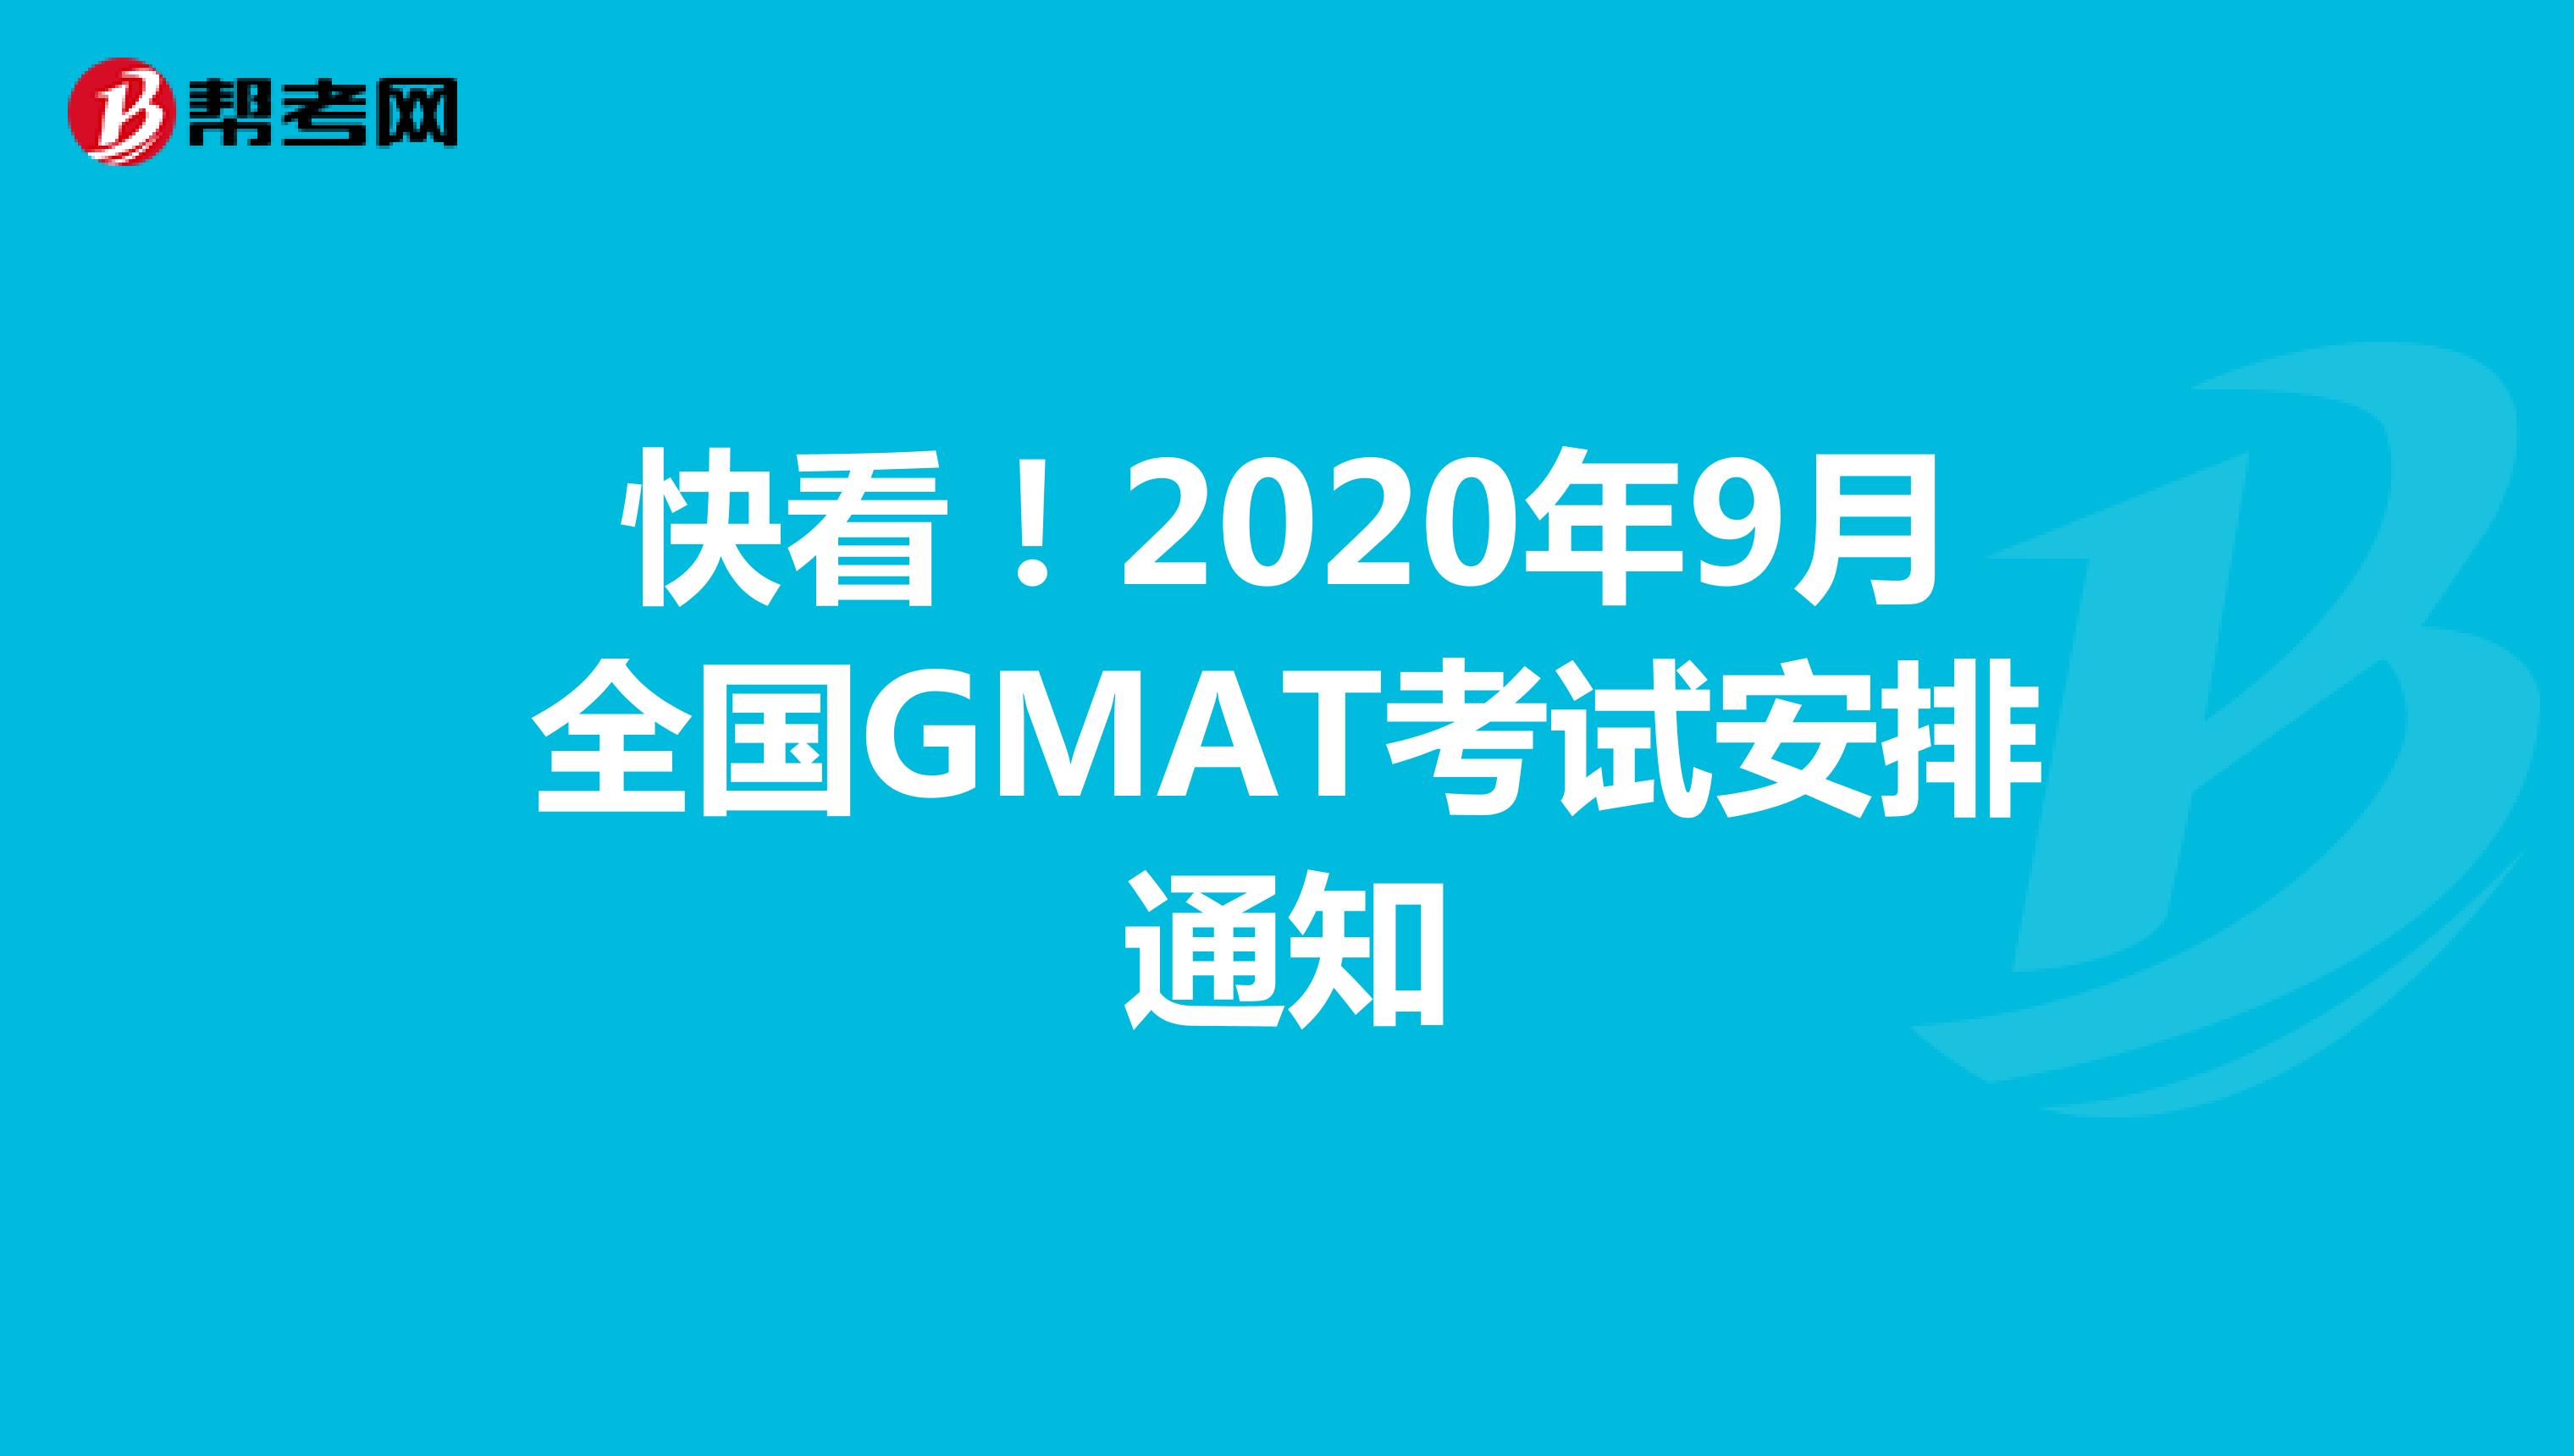 快看！2020年9月全国GMAT考试安排通知